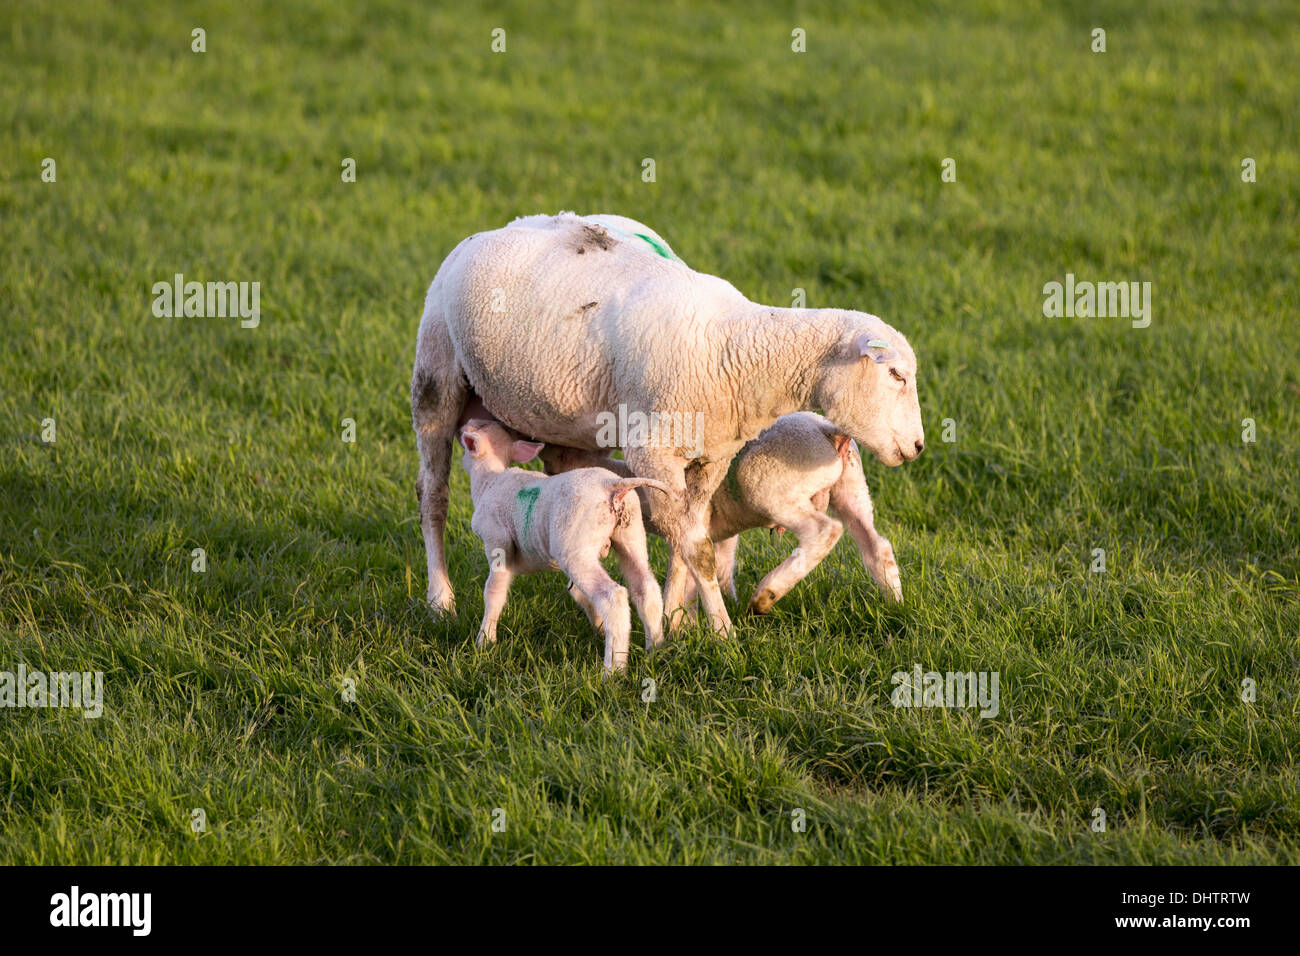 Pays-bas, Oosthuizen, moutons et agneaux Banque D'Images